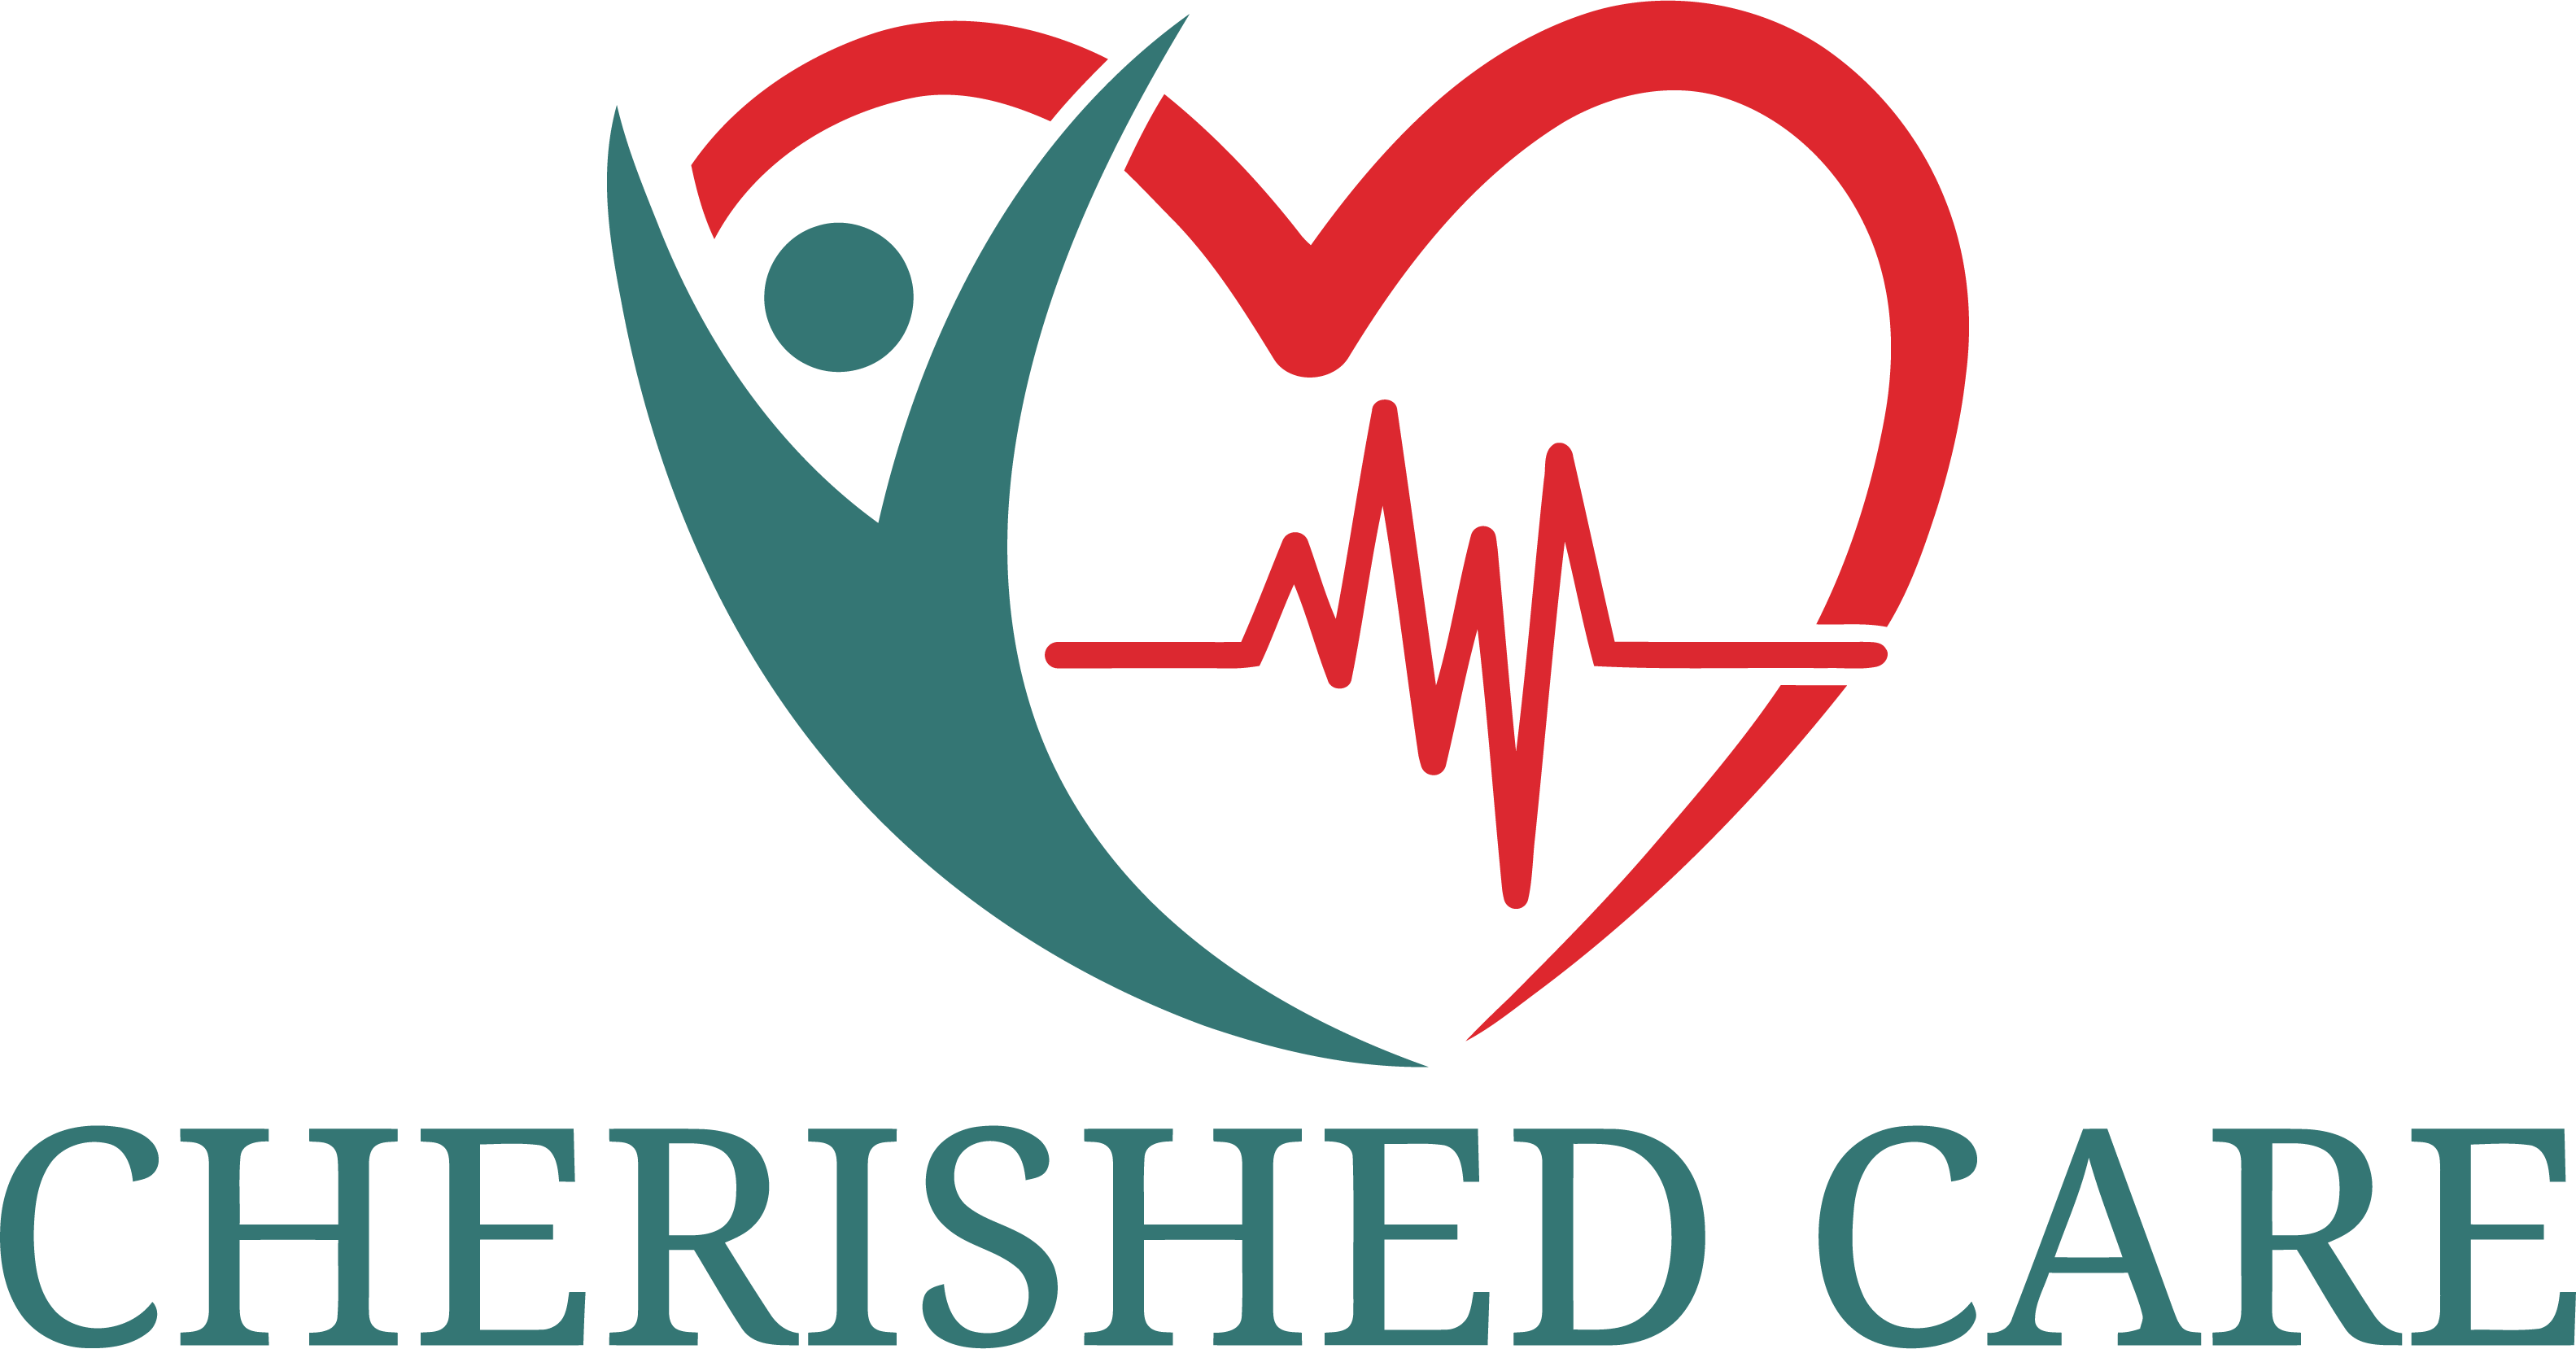 Cherished Care Ltd